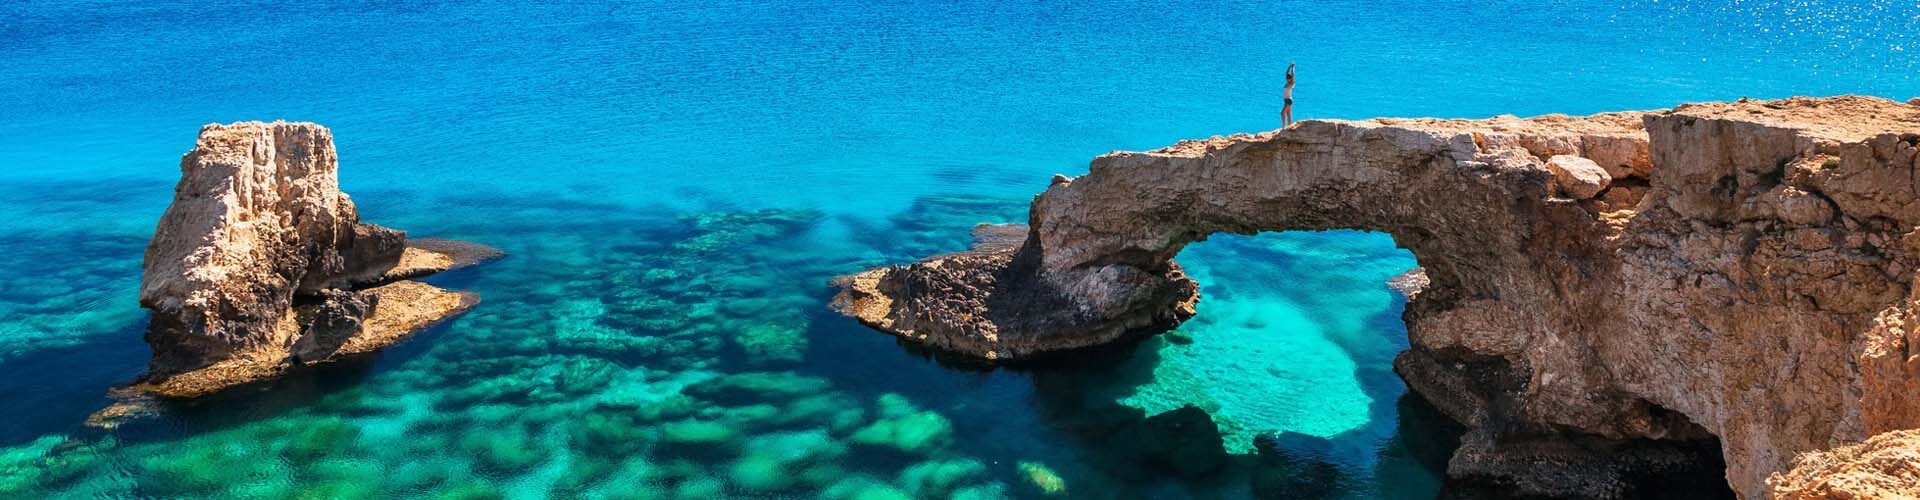 Türkisblaues Meer und felsige Küste in Zypern